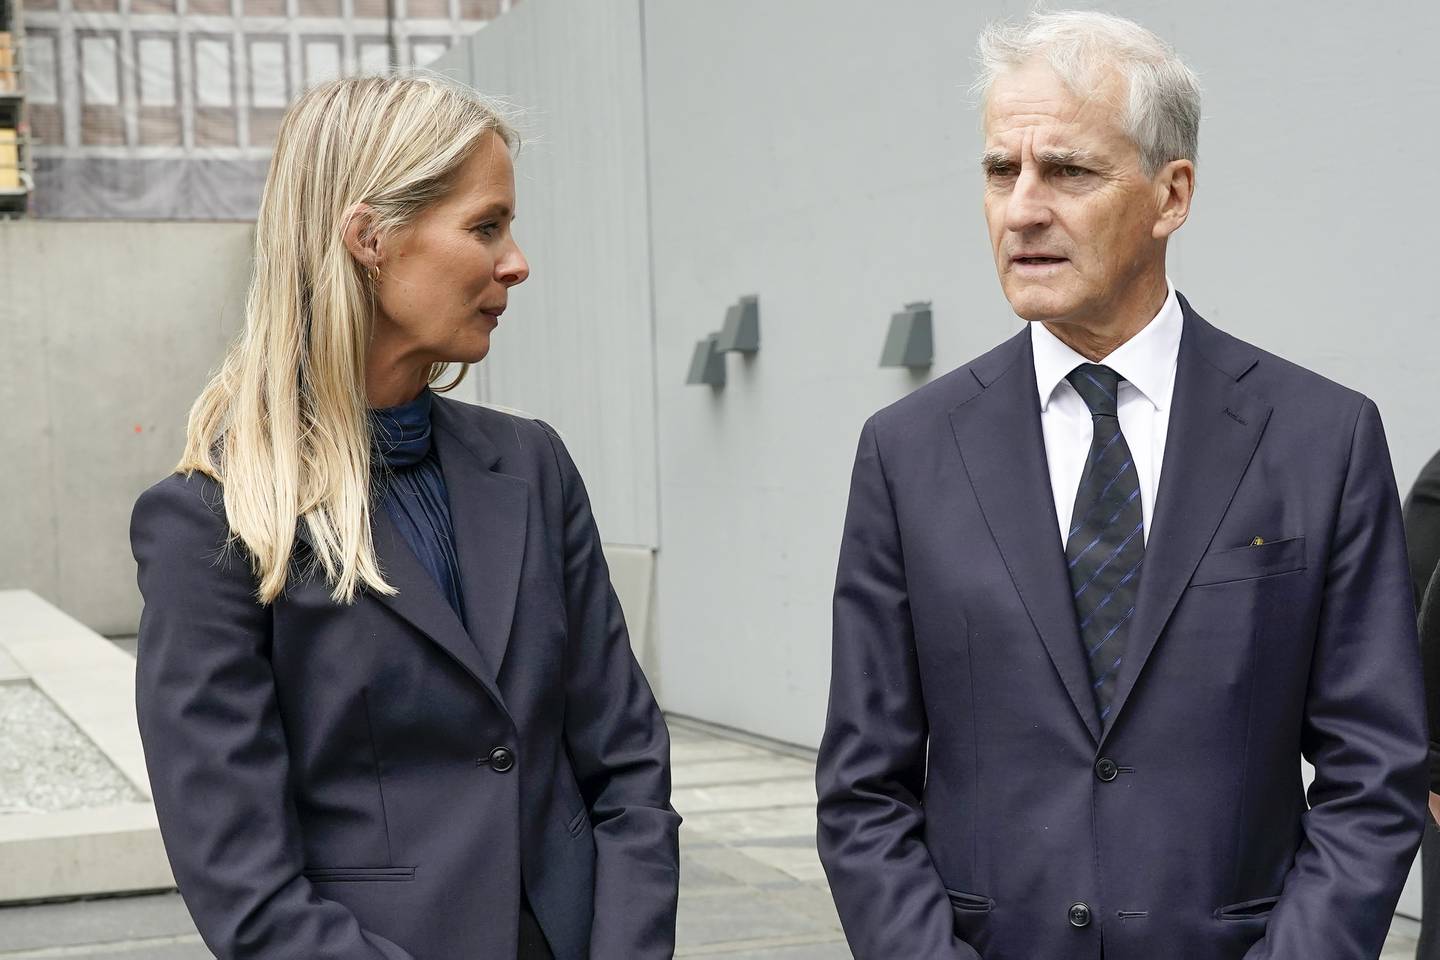 Kommisjonens leder Cathrine Thorleifsson og statsminister Jonas Gahr Støre under pressemøte om ny ekstremismekommisjon ved 22. juli-minnesmerket på Johan Nygaardsvolds plass ved Høyblokka.